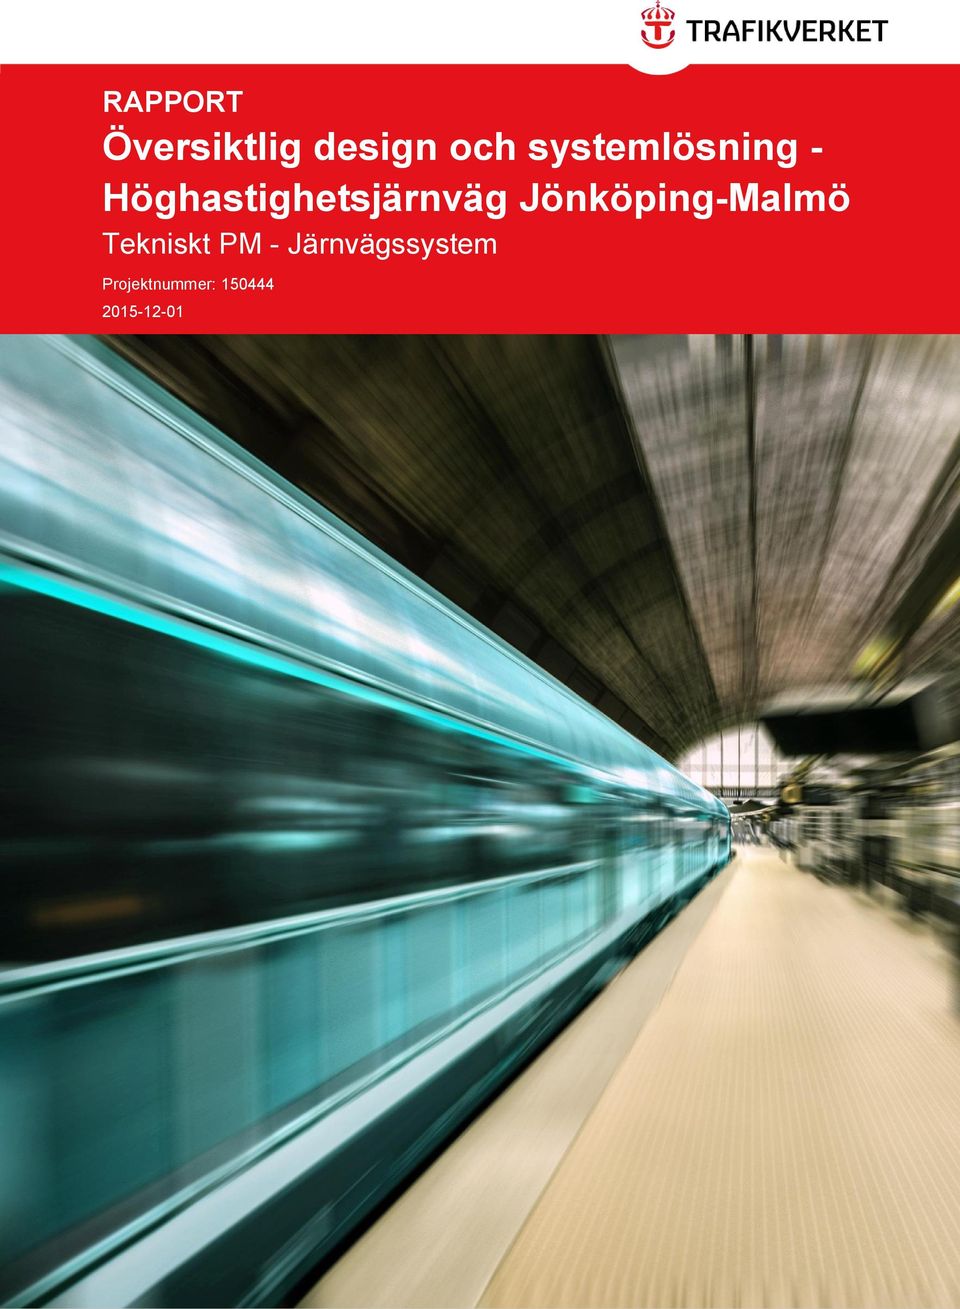 Jönköping-Malmö Tekniskt PM -